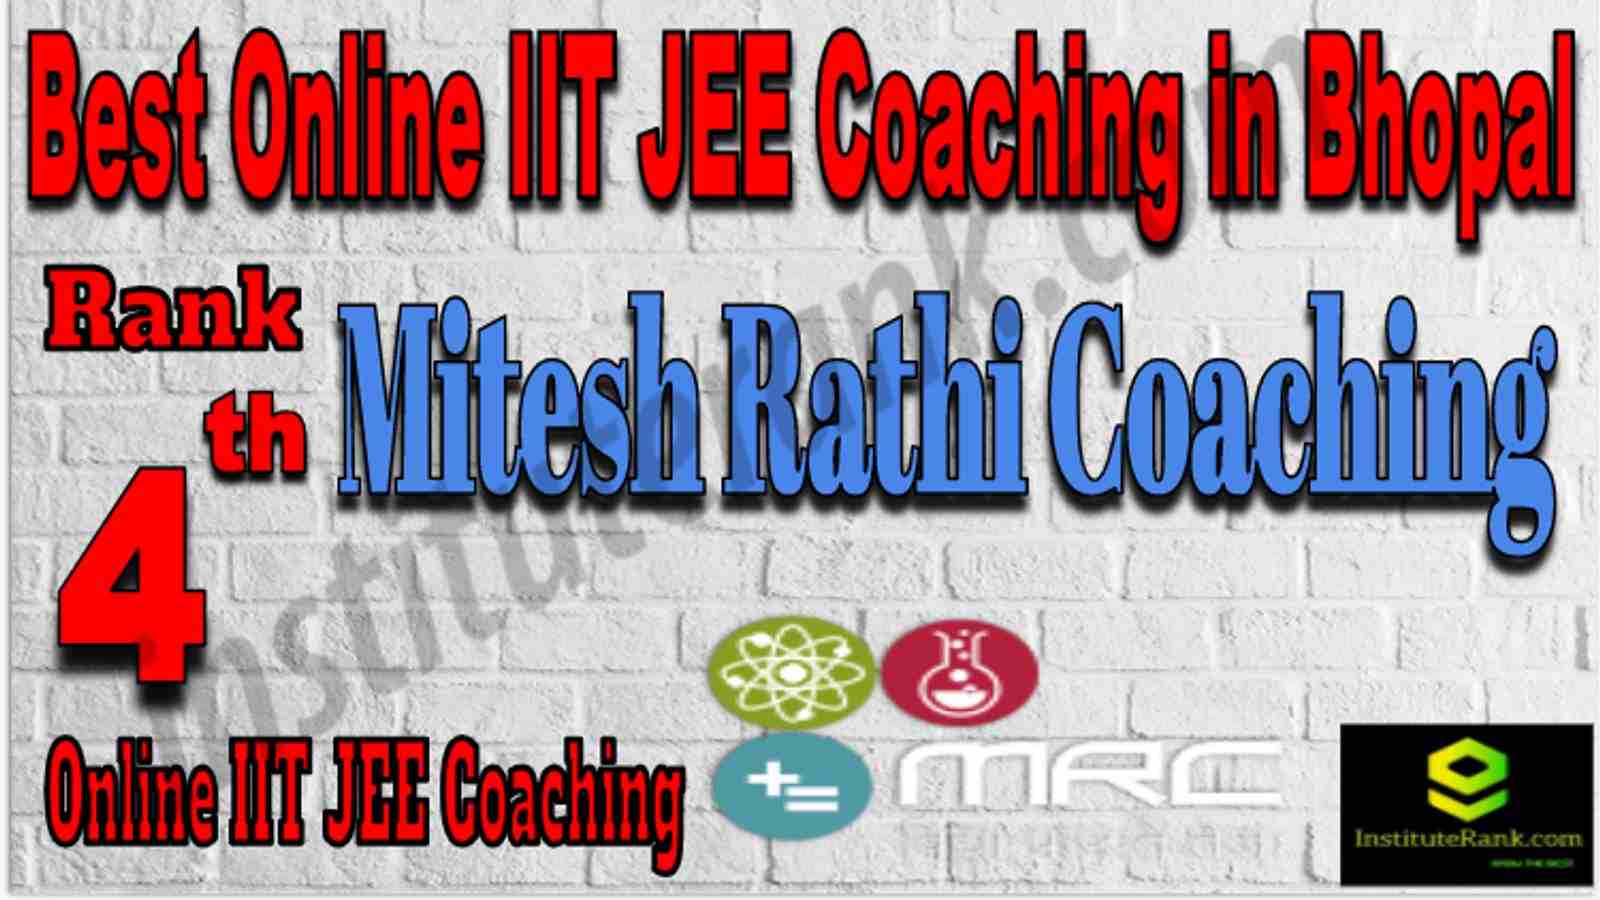 Rank 4 Best Online IIT JEE Coaching in Bhopal